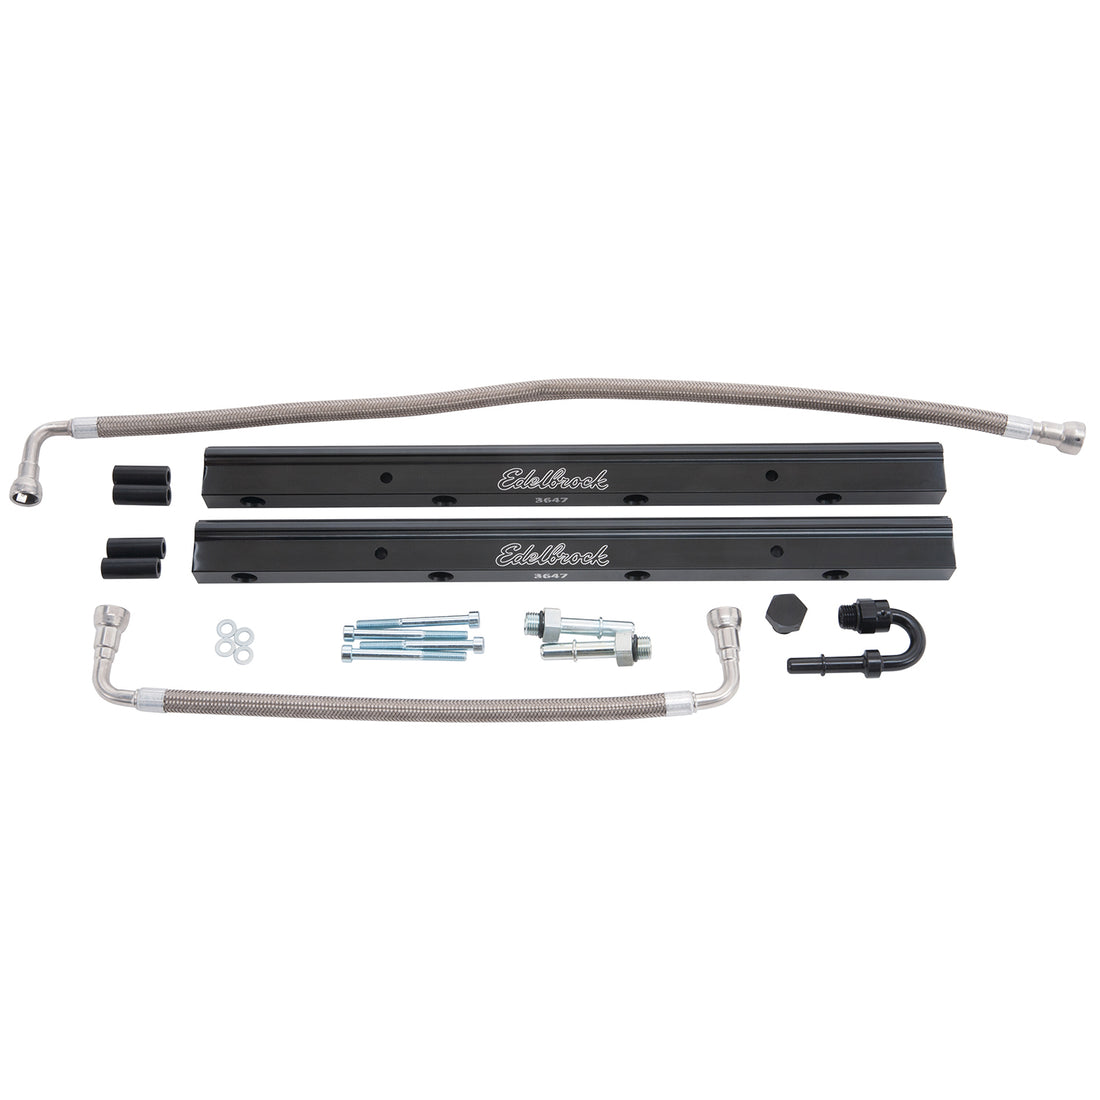 Fuel Injector Rail Kit #3647, -6 AN Black Anodized For Chrysler HEMI 3G Edelbrock